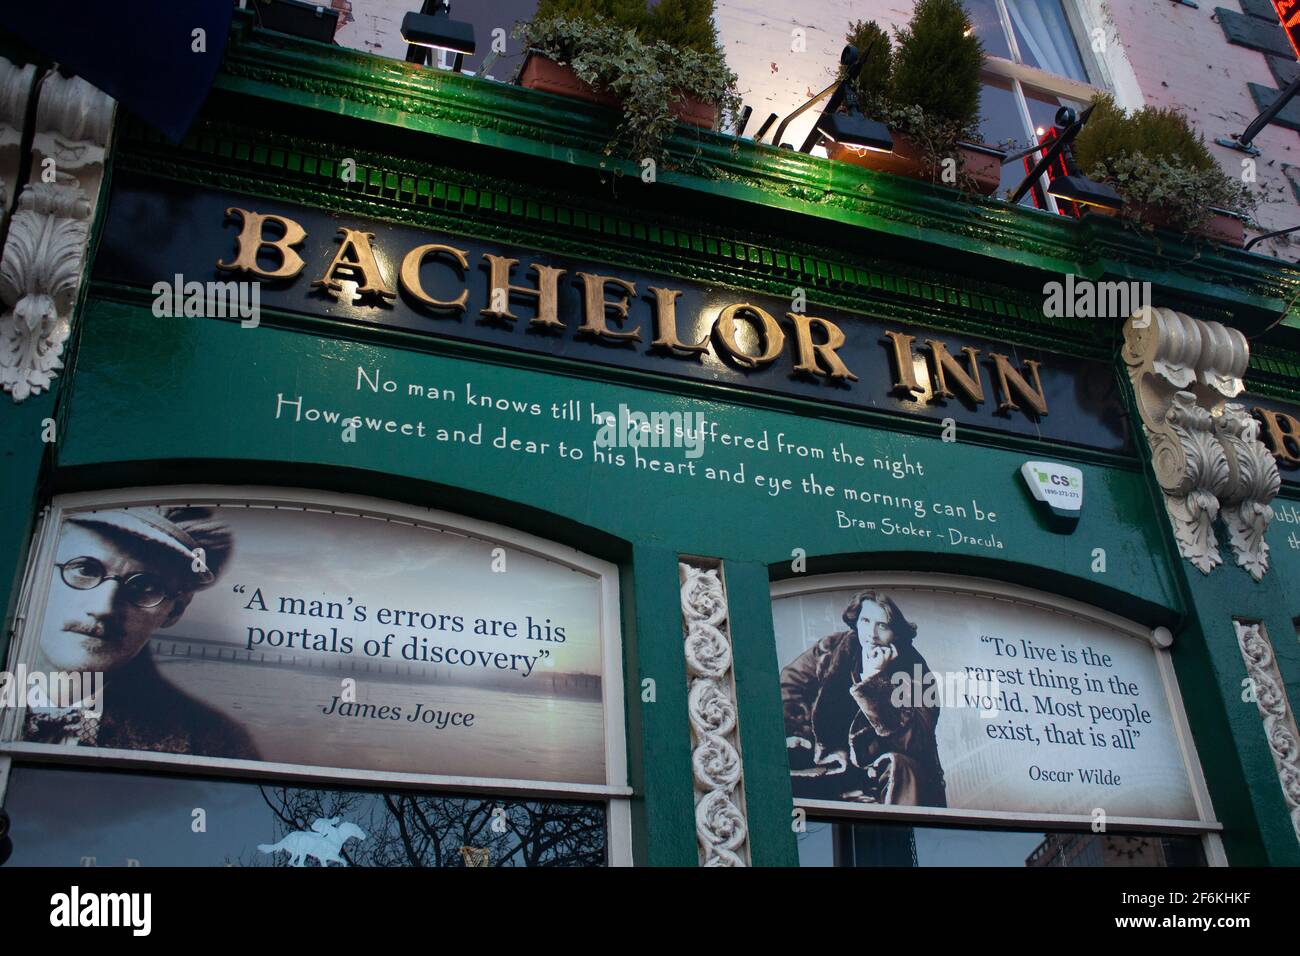 Dublino, Irlanda, 5 aprile 2013: L'esterno del Bachelor Inn bar a Dublino con immagini e citazioni di James Joyce e Oscar Wilde. Foto Stock